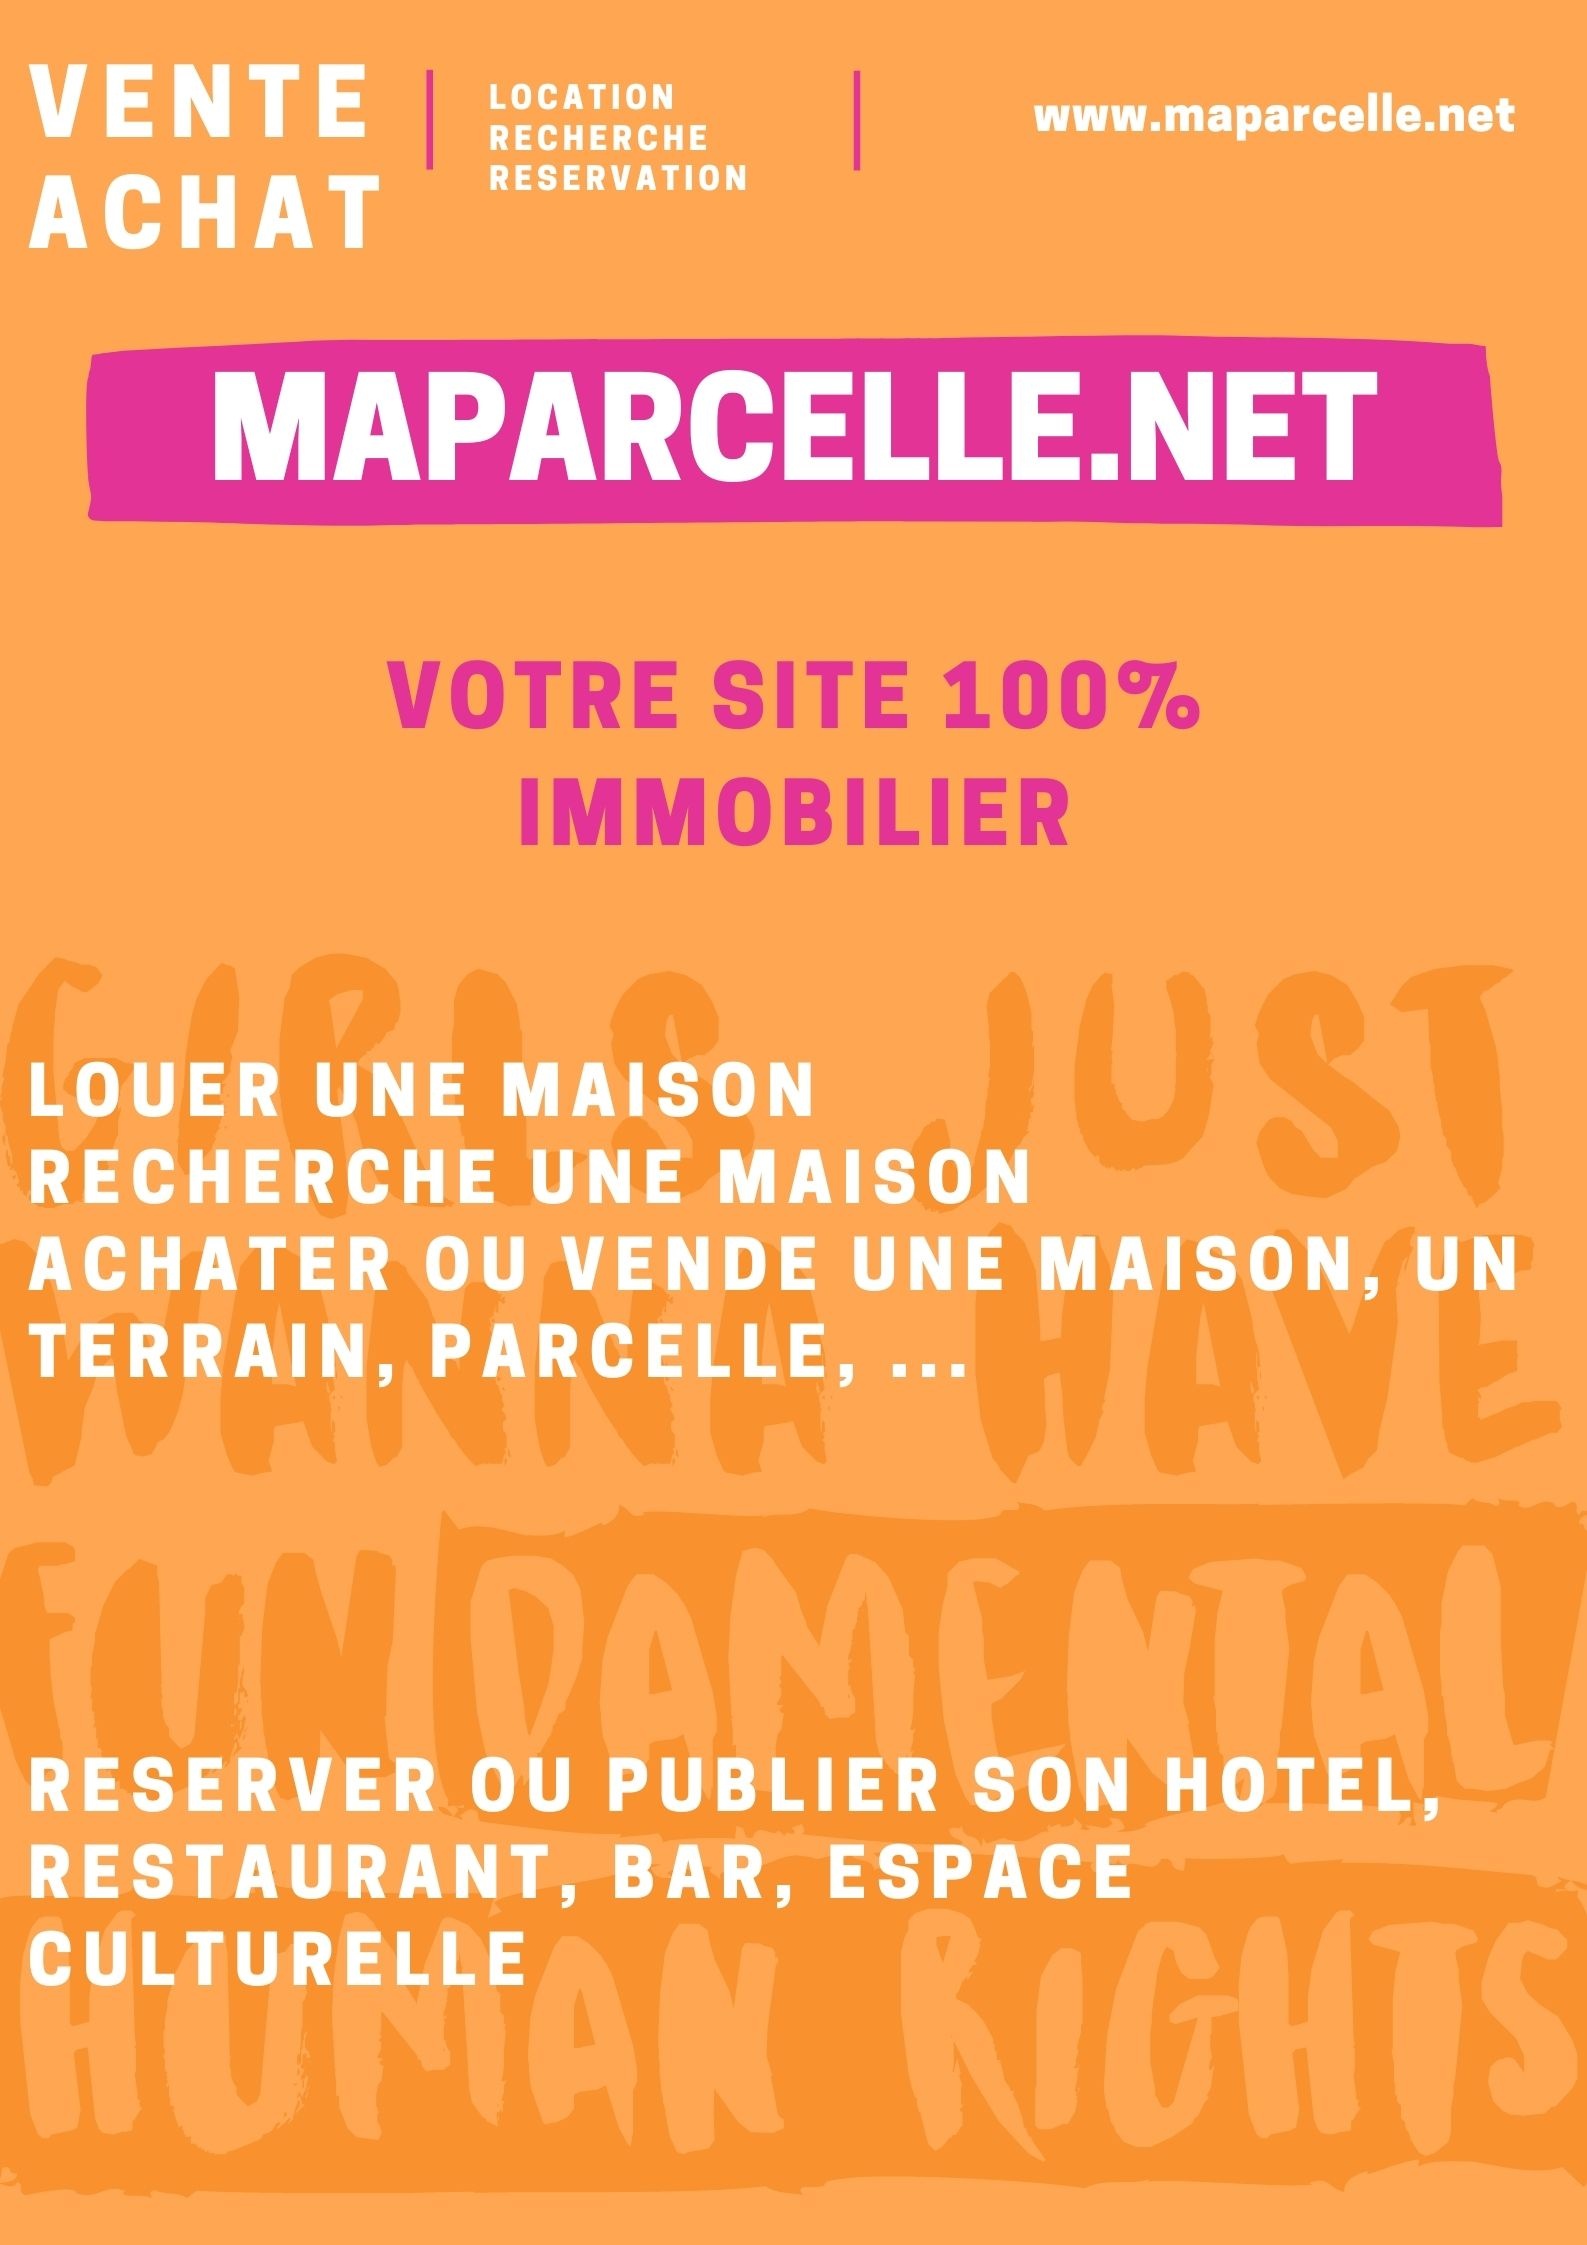 MAPARCELLE.NET, Le site web 100% immobilier